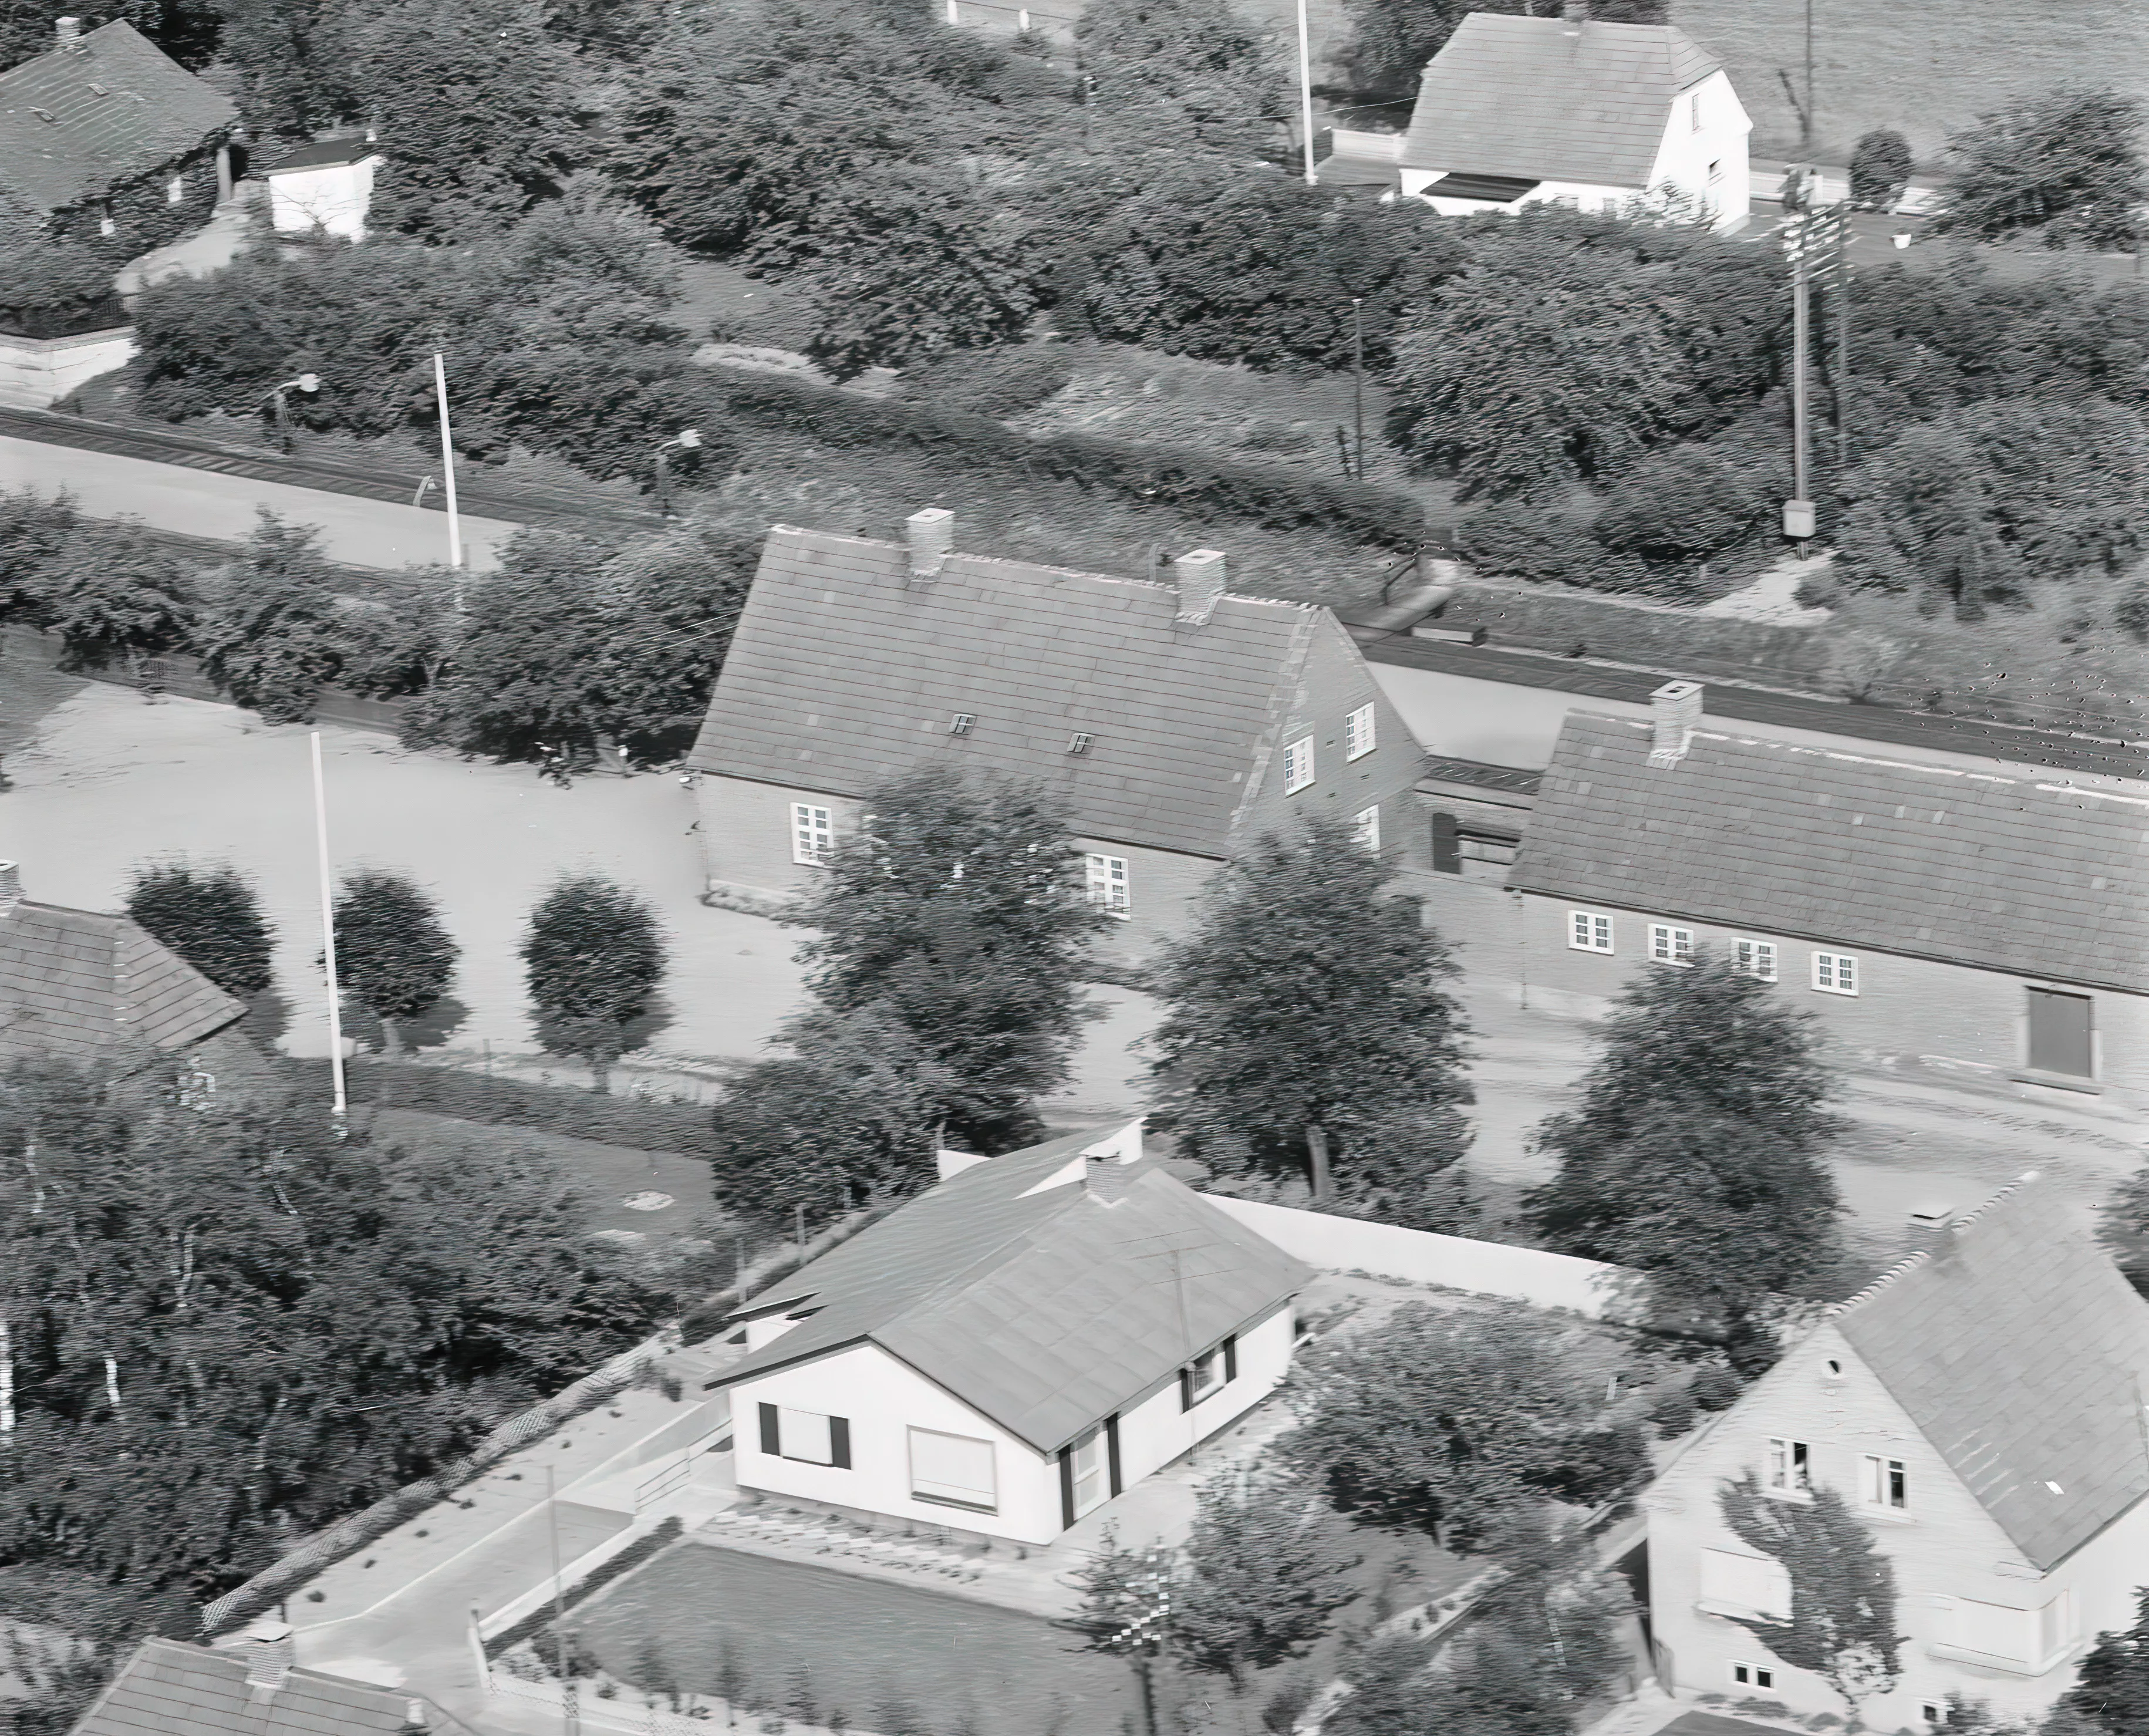 Billede af Bråby Station, som blev nedsat til Bråby Trinbræt i 1960.